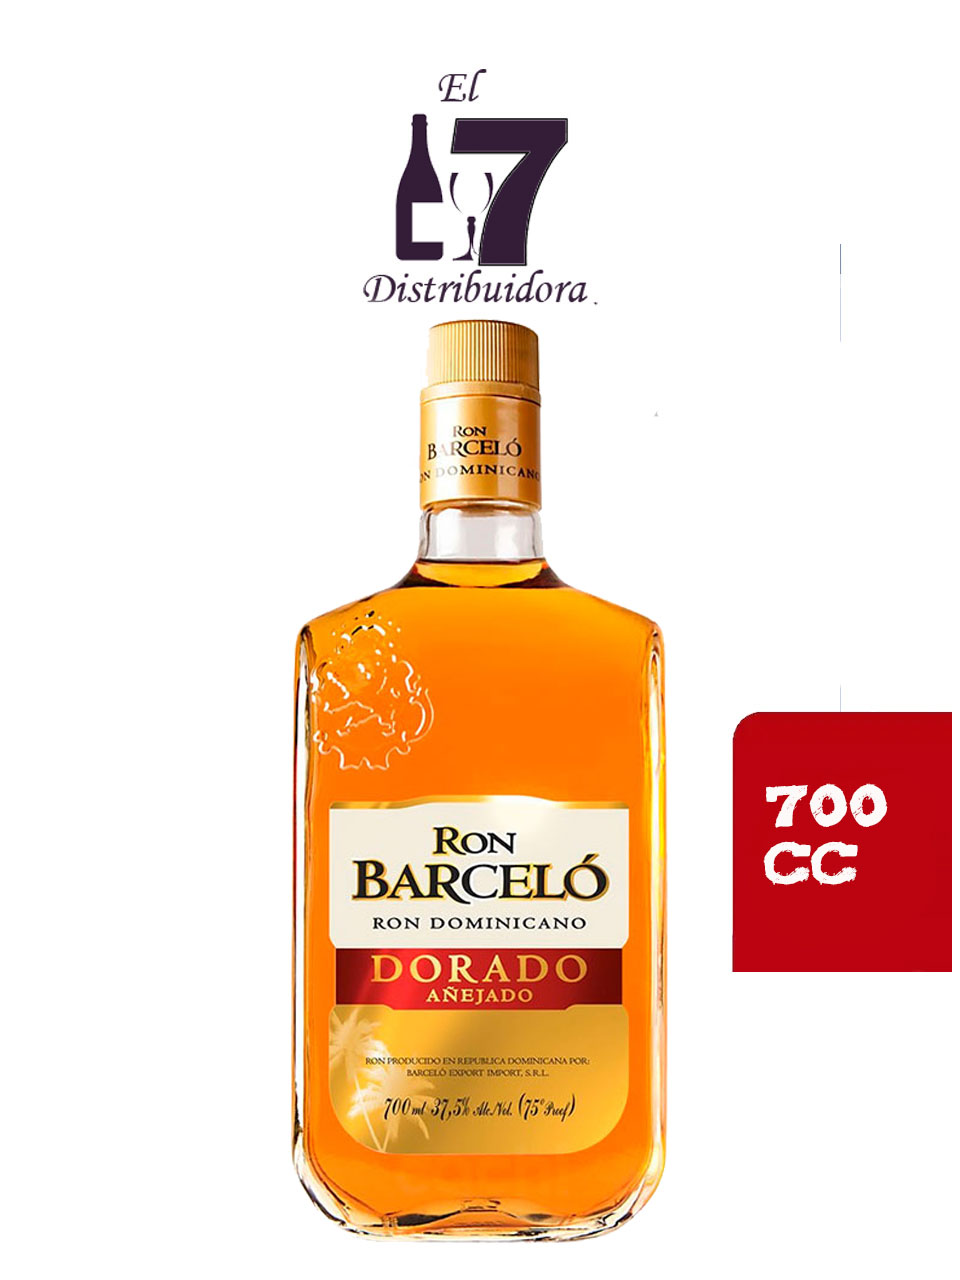 Barcelo Dorado Añejado 700 CC